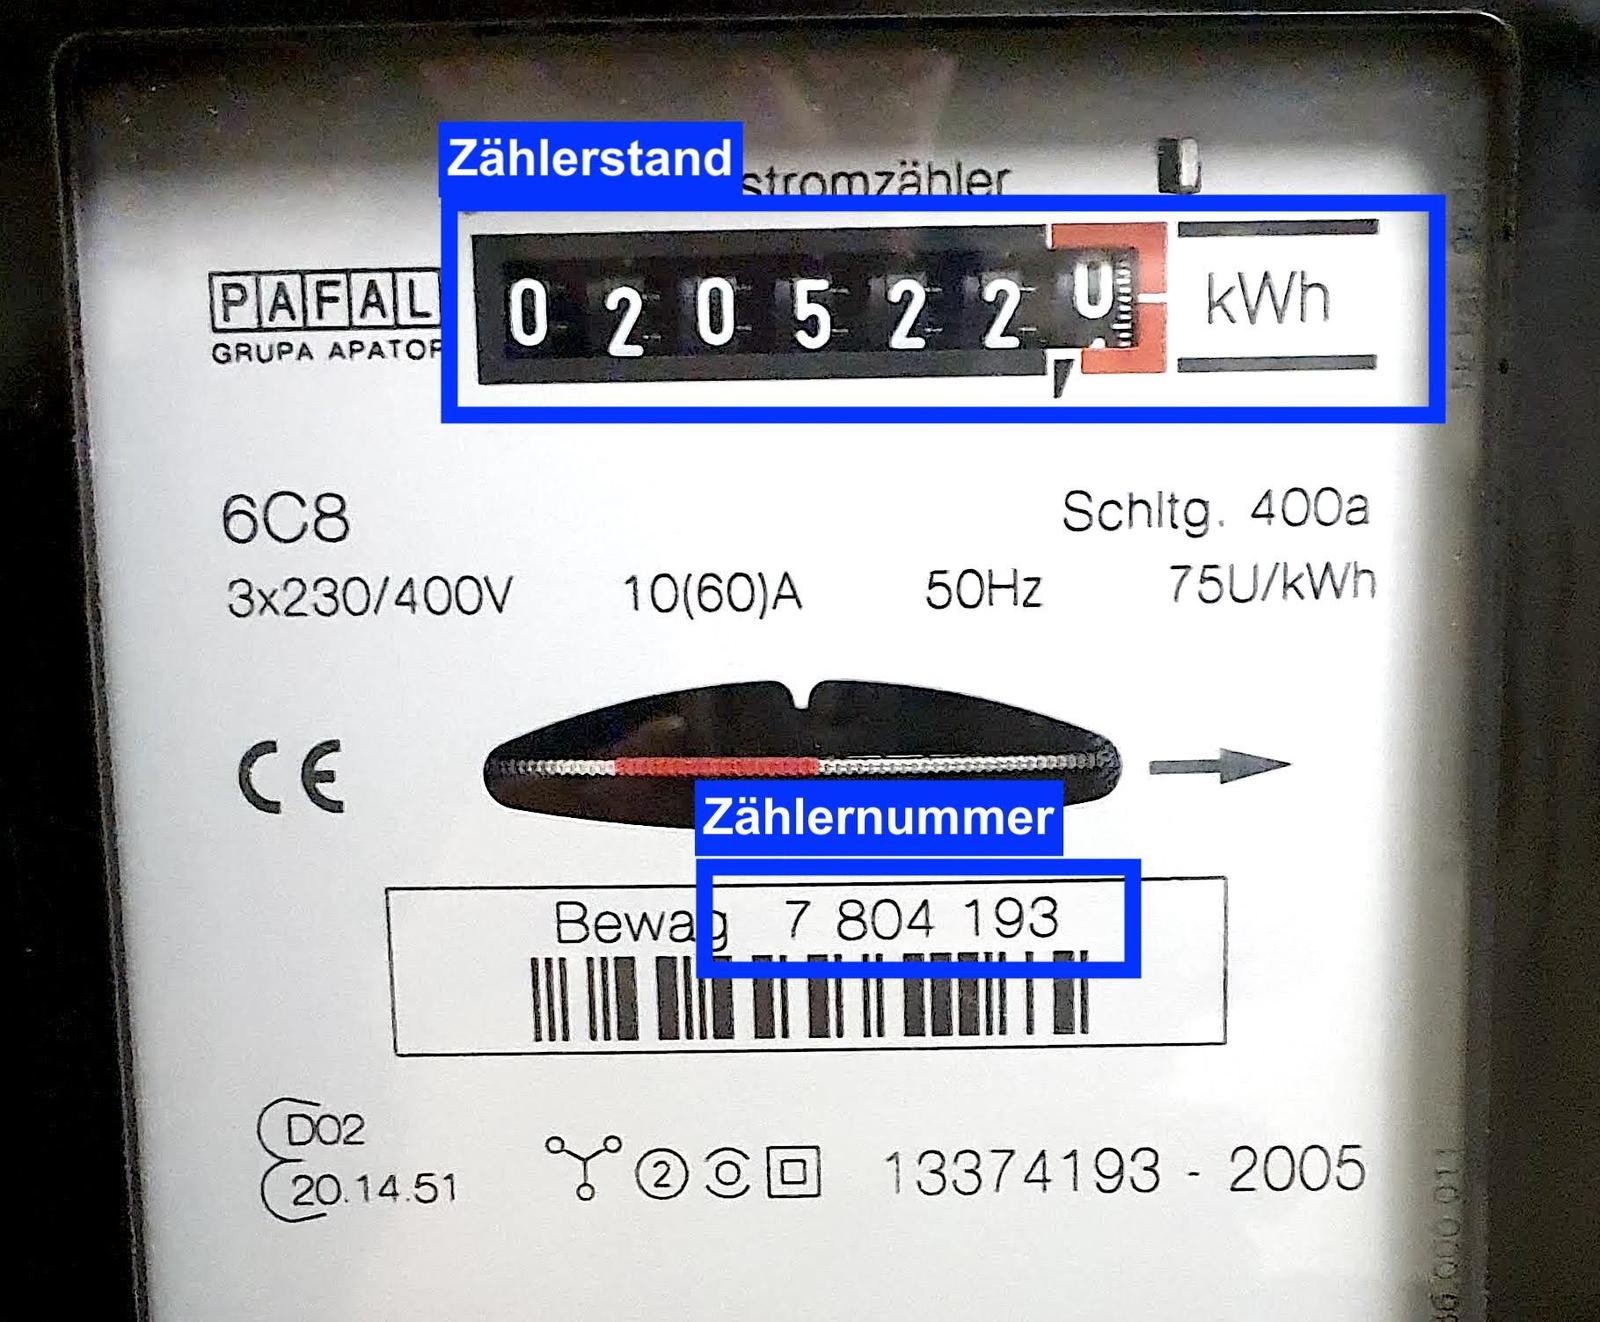 Zählernummer and Zählerstand